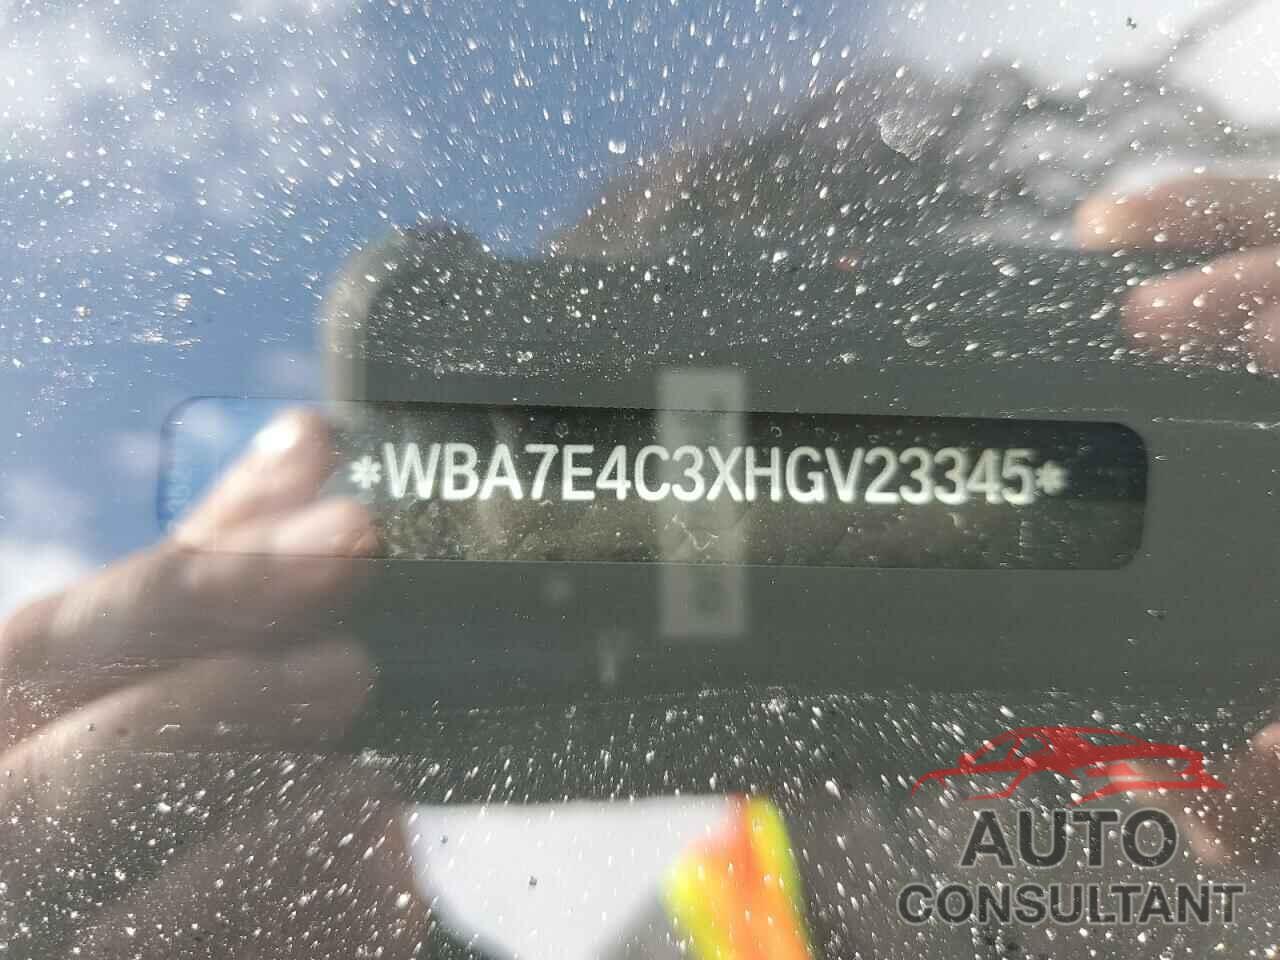 BMW 7 SERIES 2017 - WBA7E4C3XHGV23345